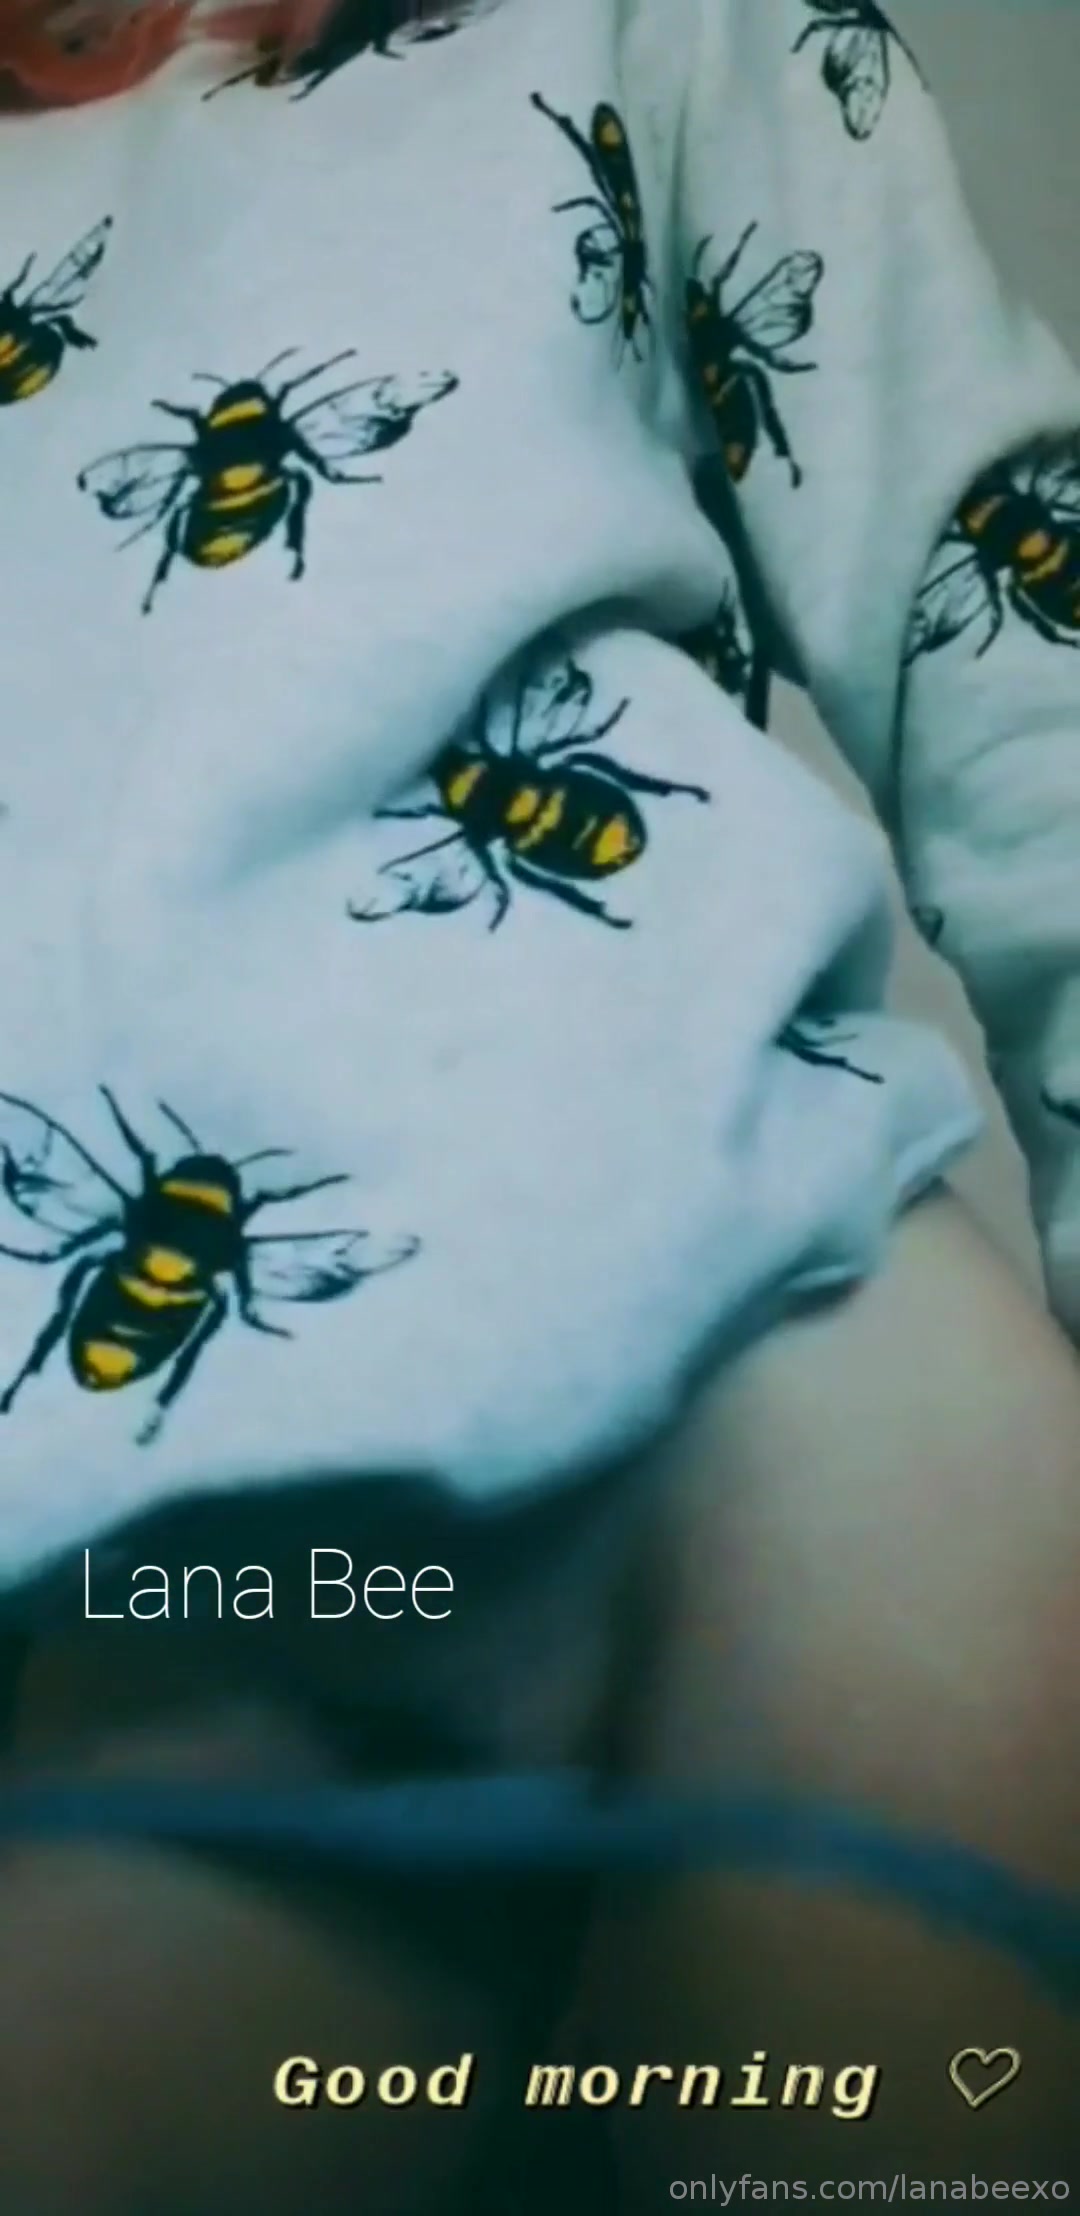 Lana bee onlyfans leaks